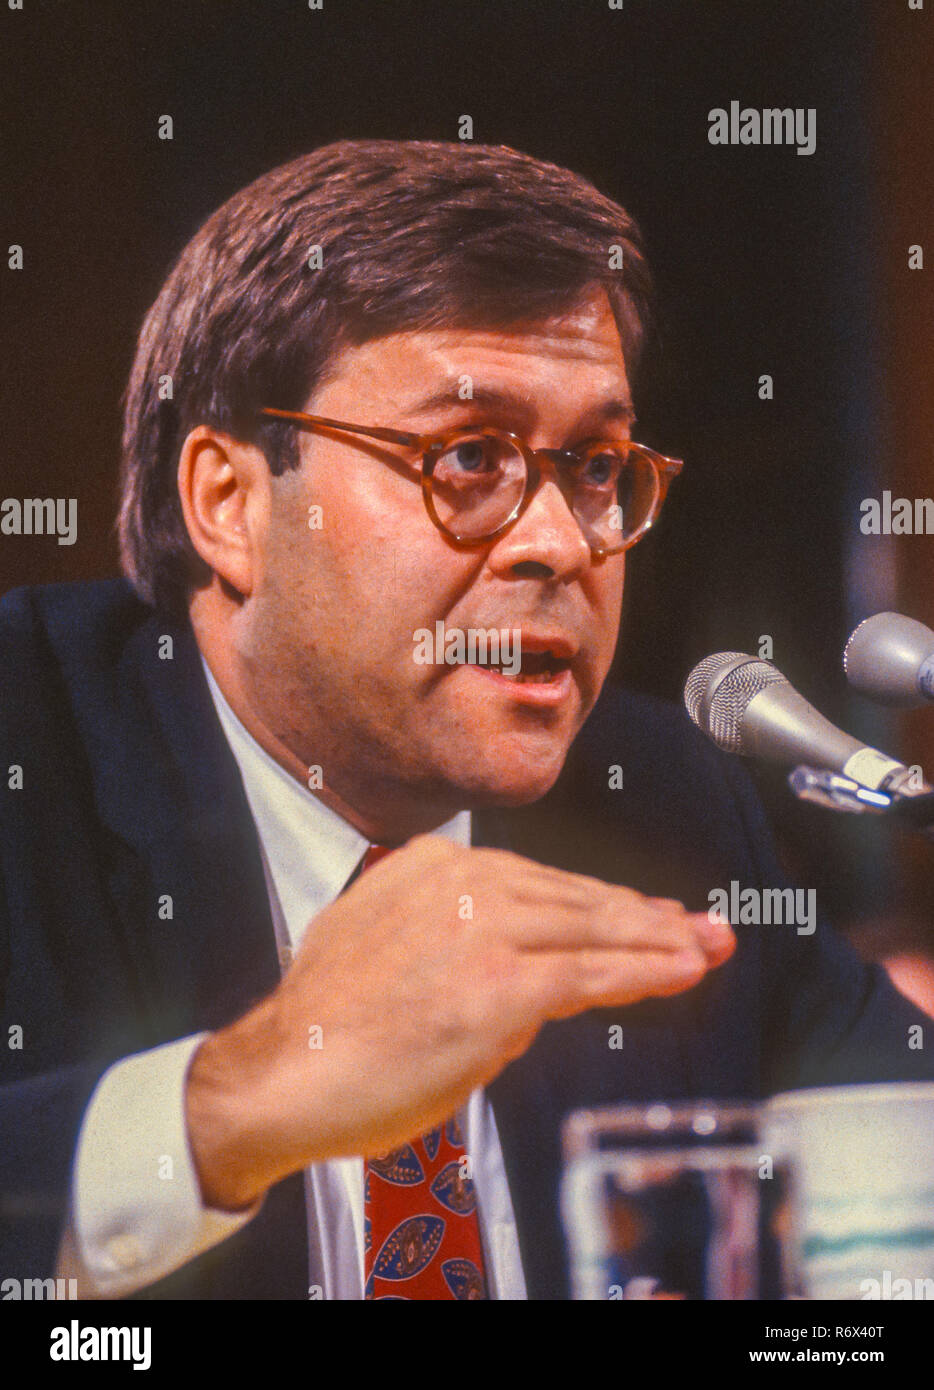 WASHINGTON, DC, Stati Uniti d'America - 12 novembre 1991: William Barr, nominee PER GLI STATI UNITI Il procuratore generale, appare prima del Senato Comitato Giudiziario. Foto Stock